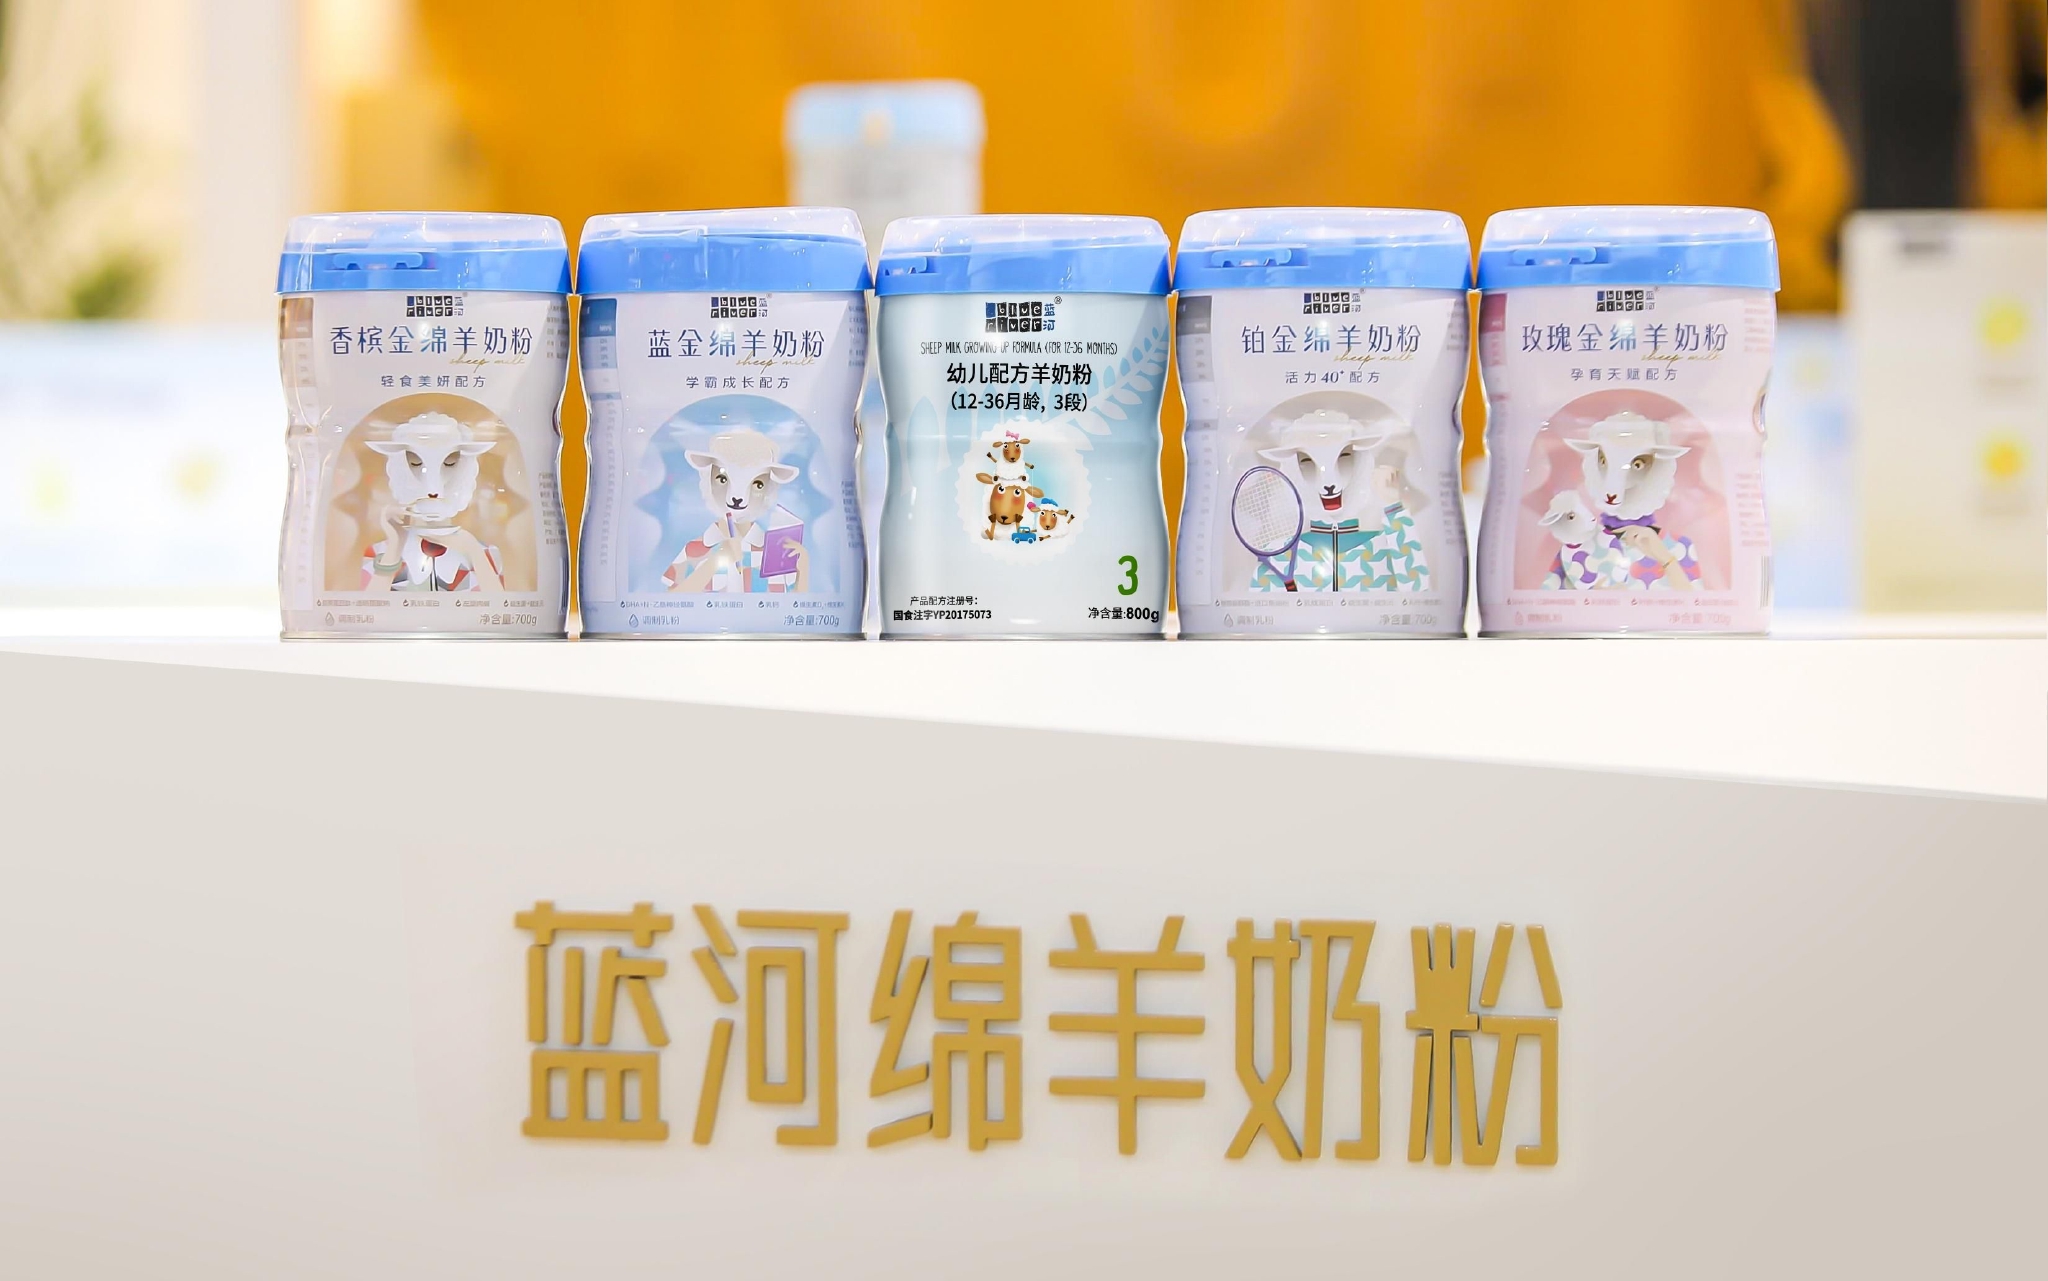 蓝河绵羊奶粉系列产品。